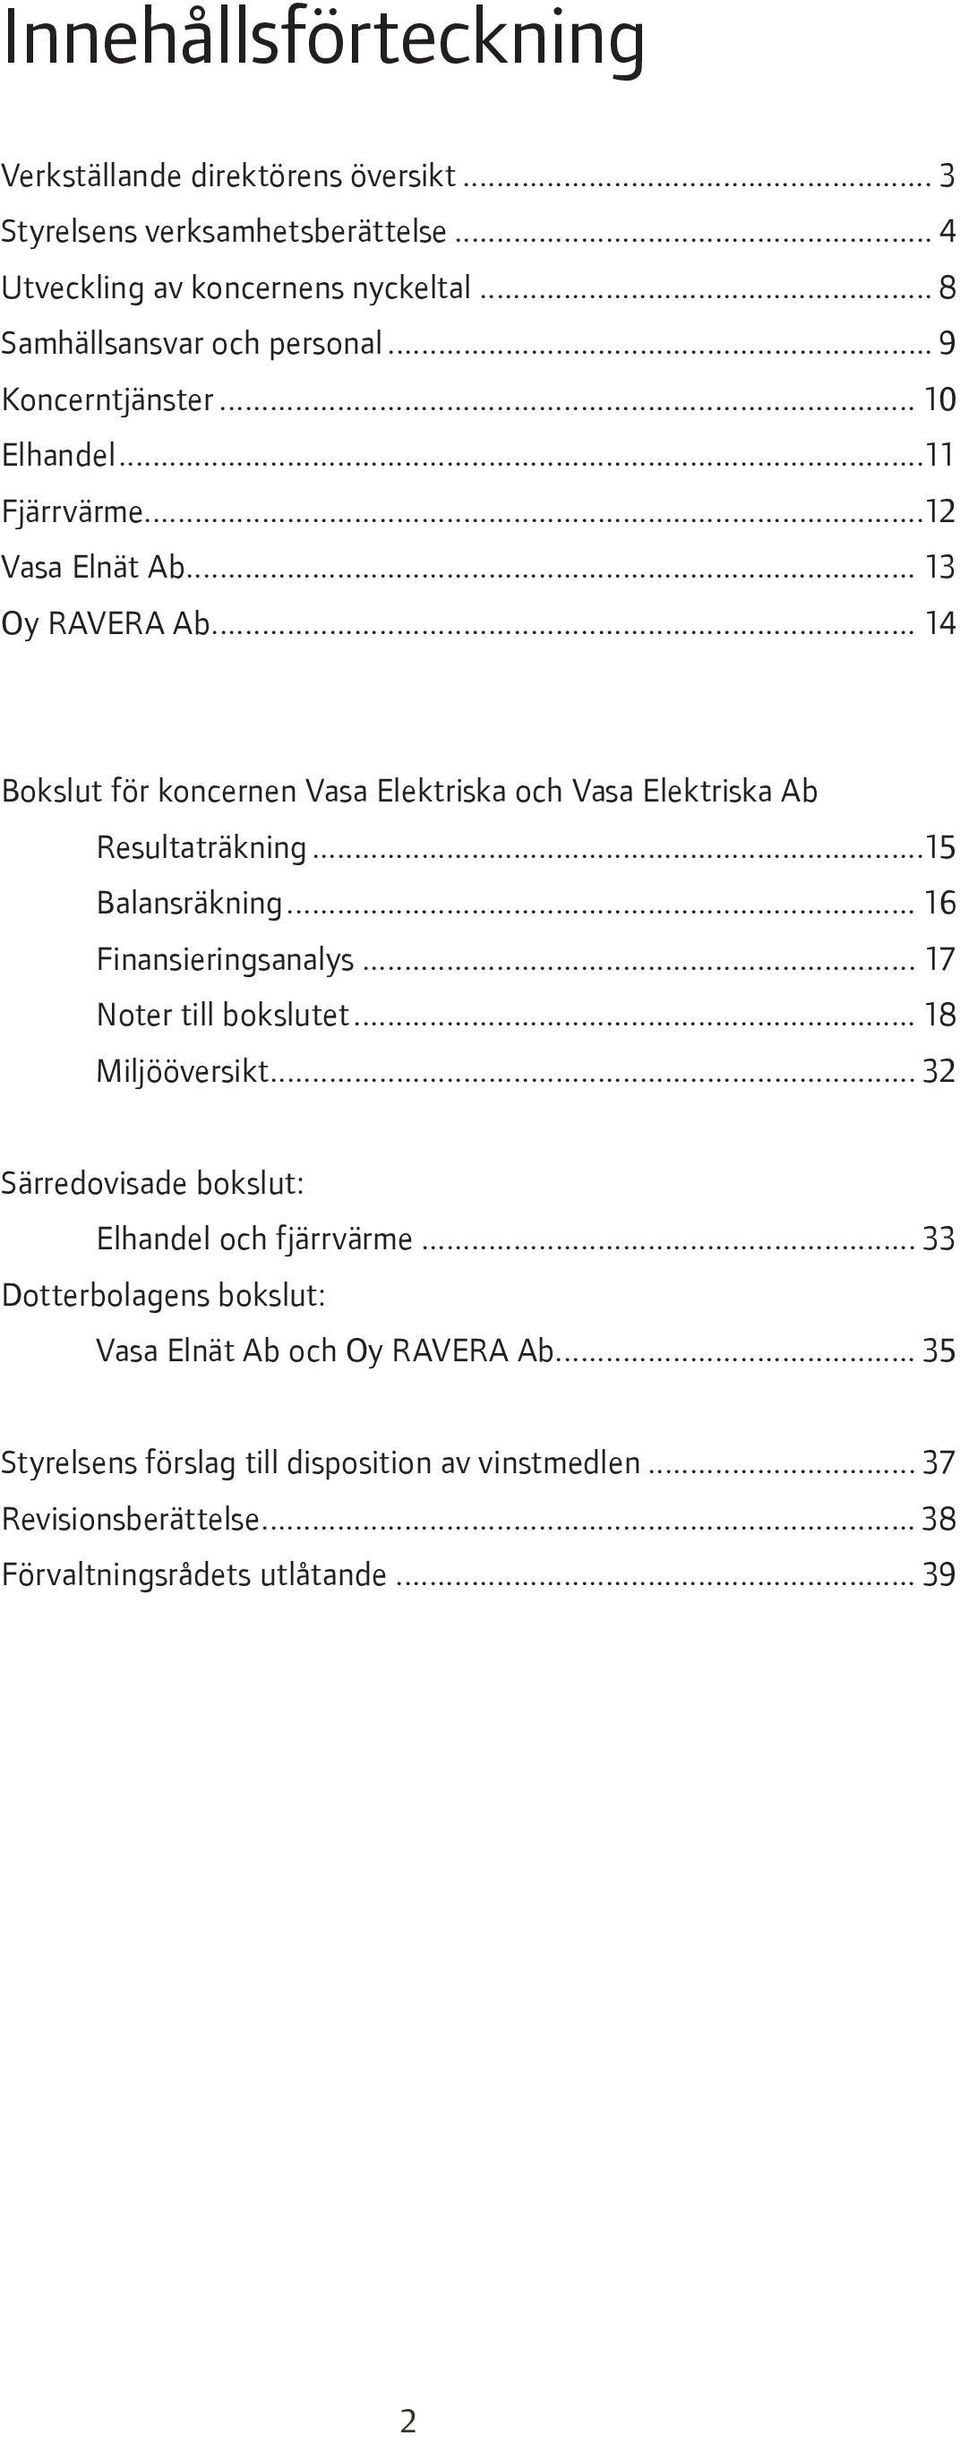 .. 14 Bokslut för koncernen Vasa Elektriska och Vasa Elektriska Ab Resultaträkning...15 Balansräkning... 16 Finansieringsanalys... 17 Noter till bokslutet.